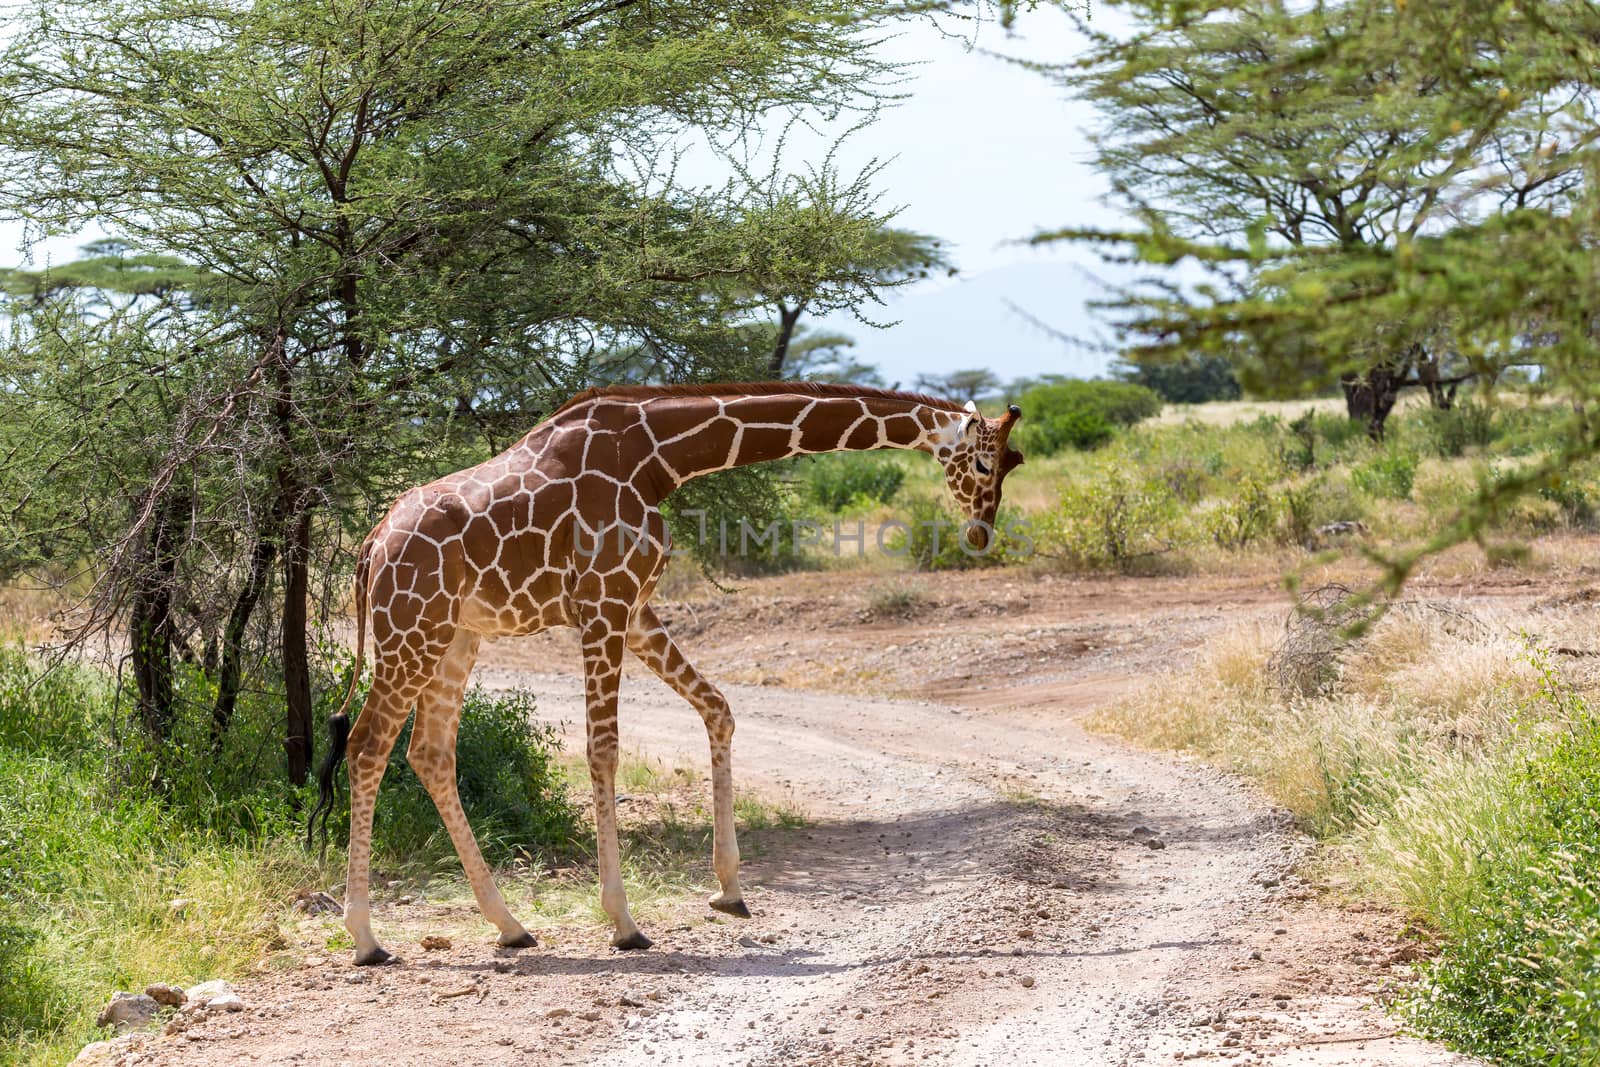 A giraffe crosses a path in the savannah by 25ehaag6